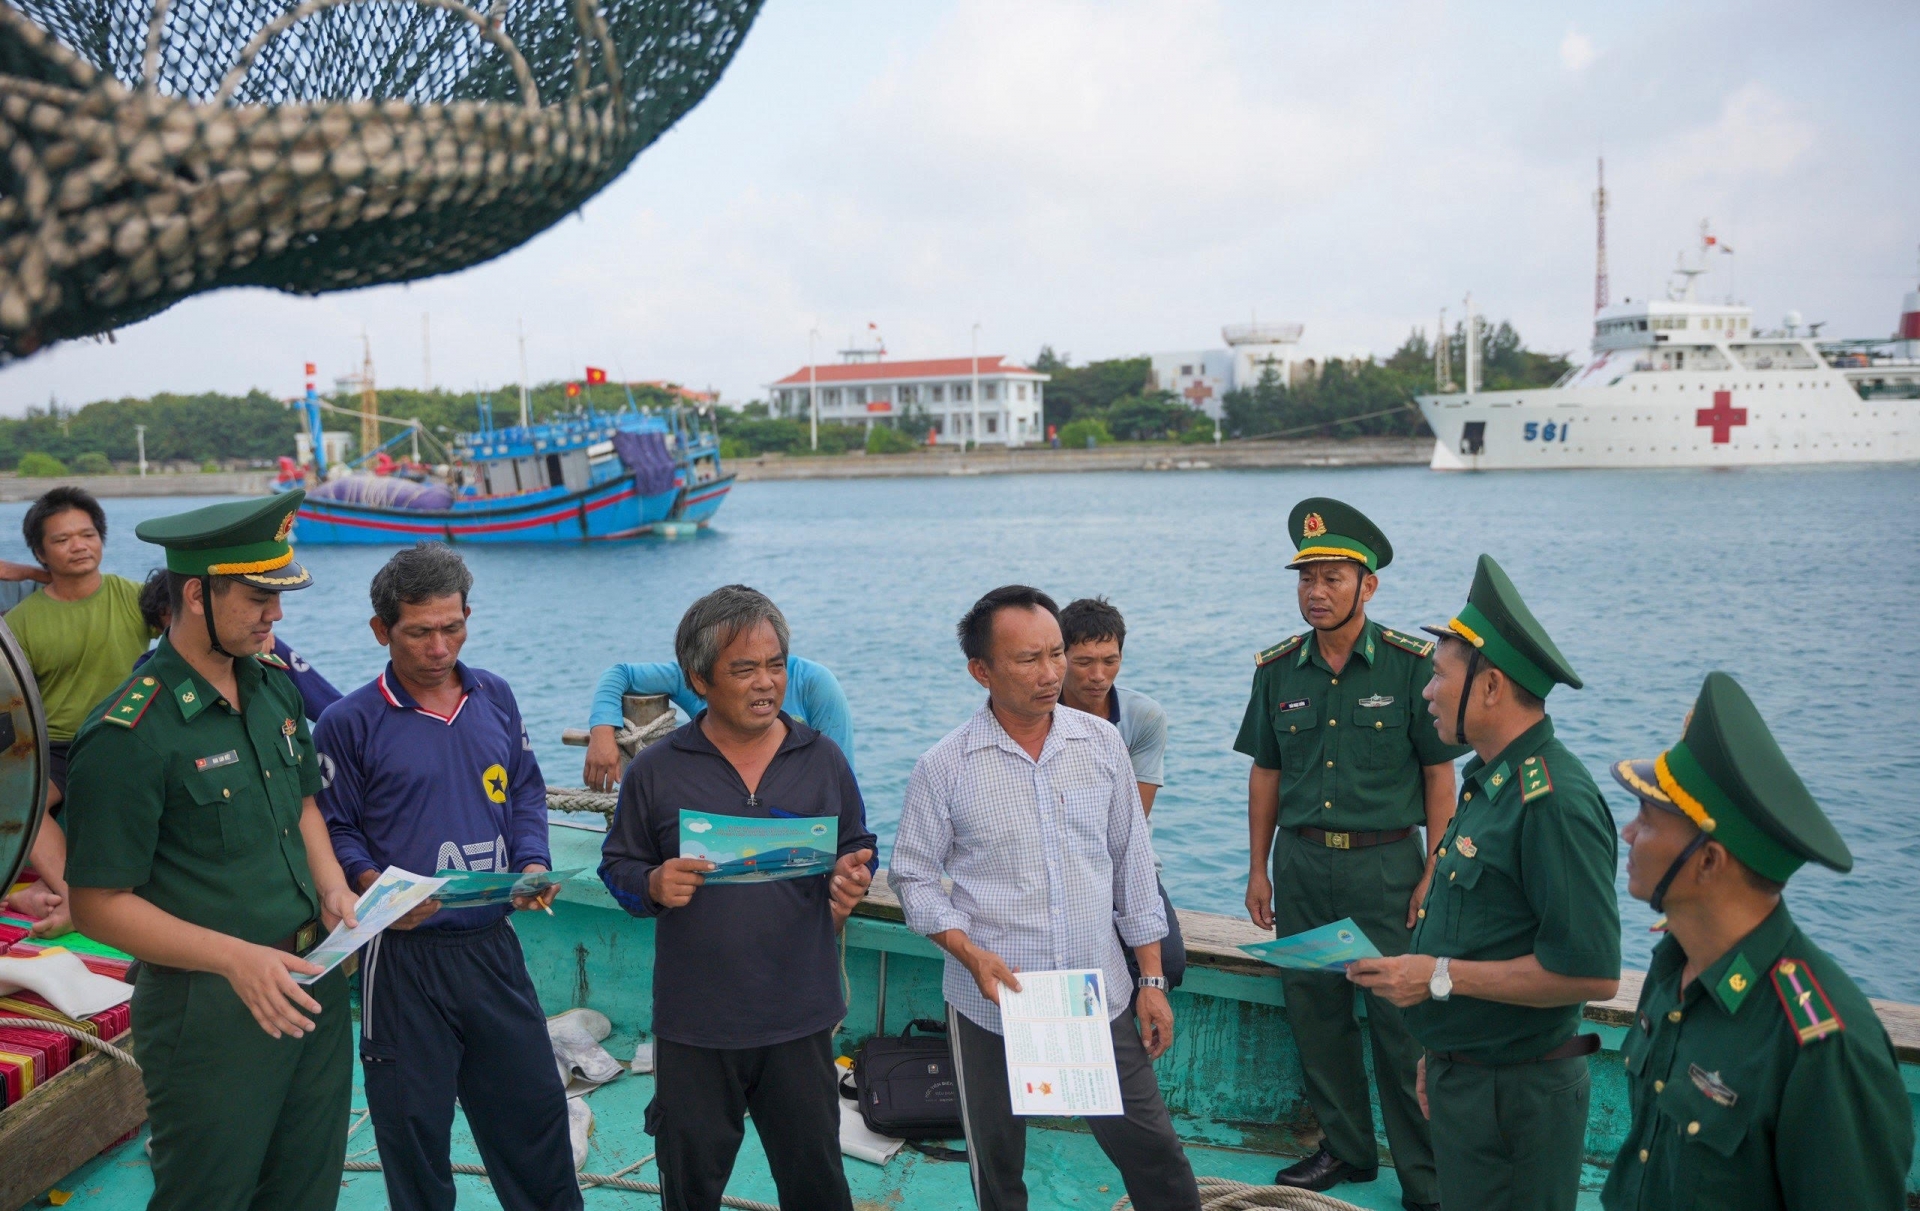 长沙岛边防站干部宣传动员渔民遵守海岛法规